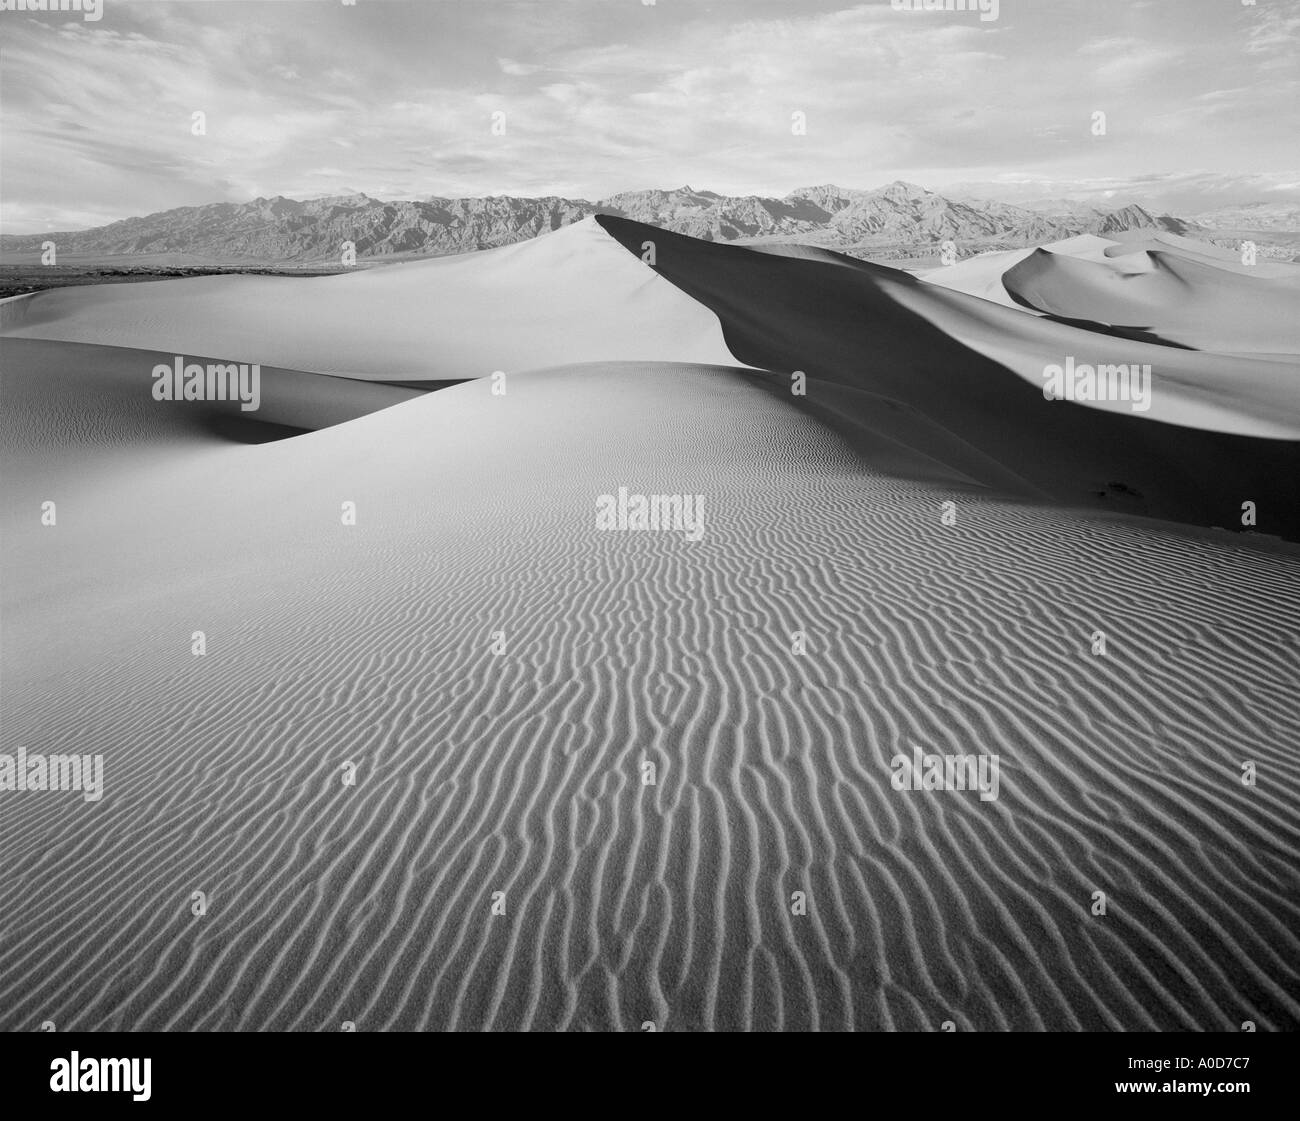 USA Californie Death Valley National Monument Mesquite Flat dunes de sable désert paysage Banque D'Images